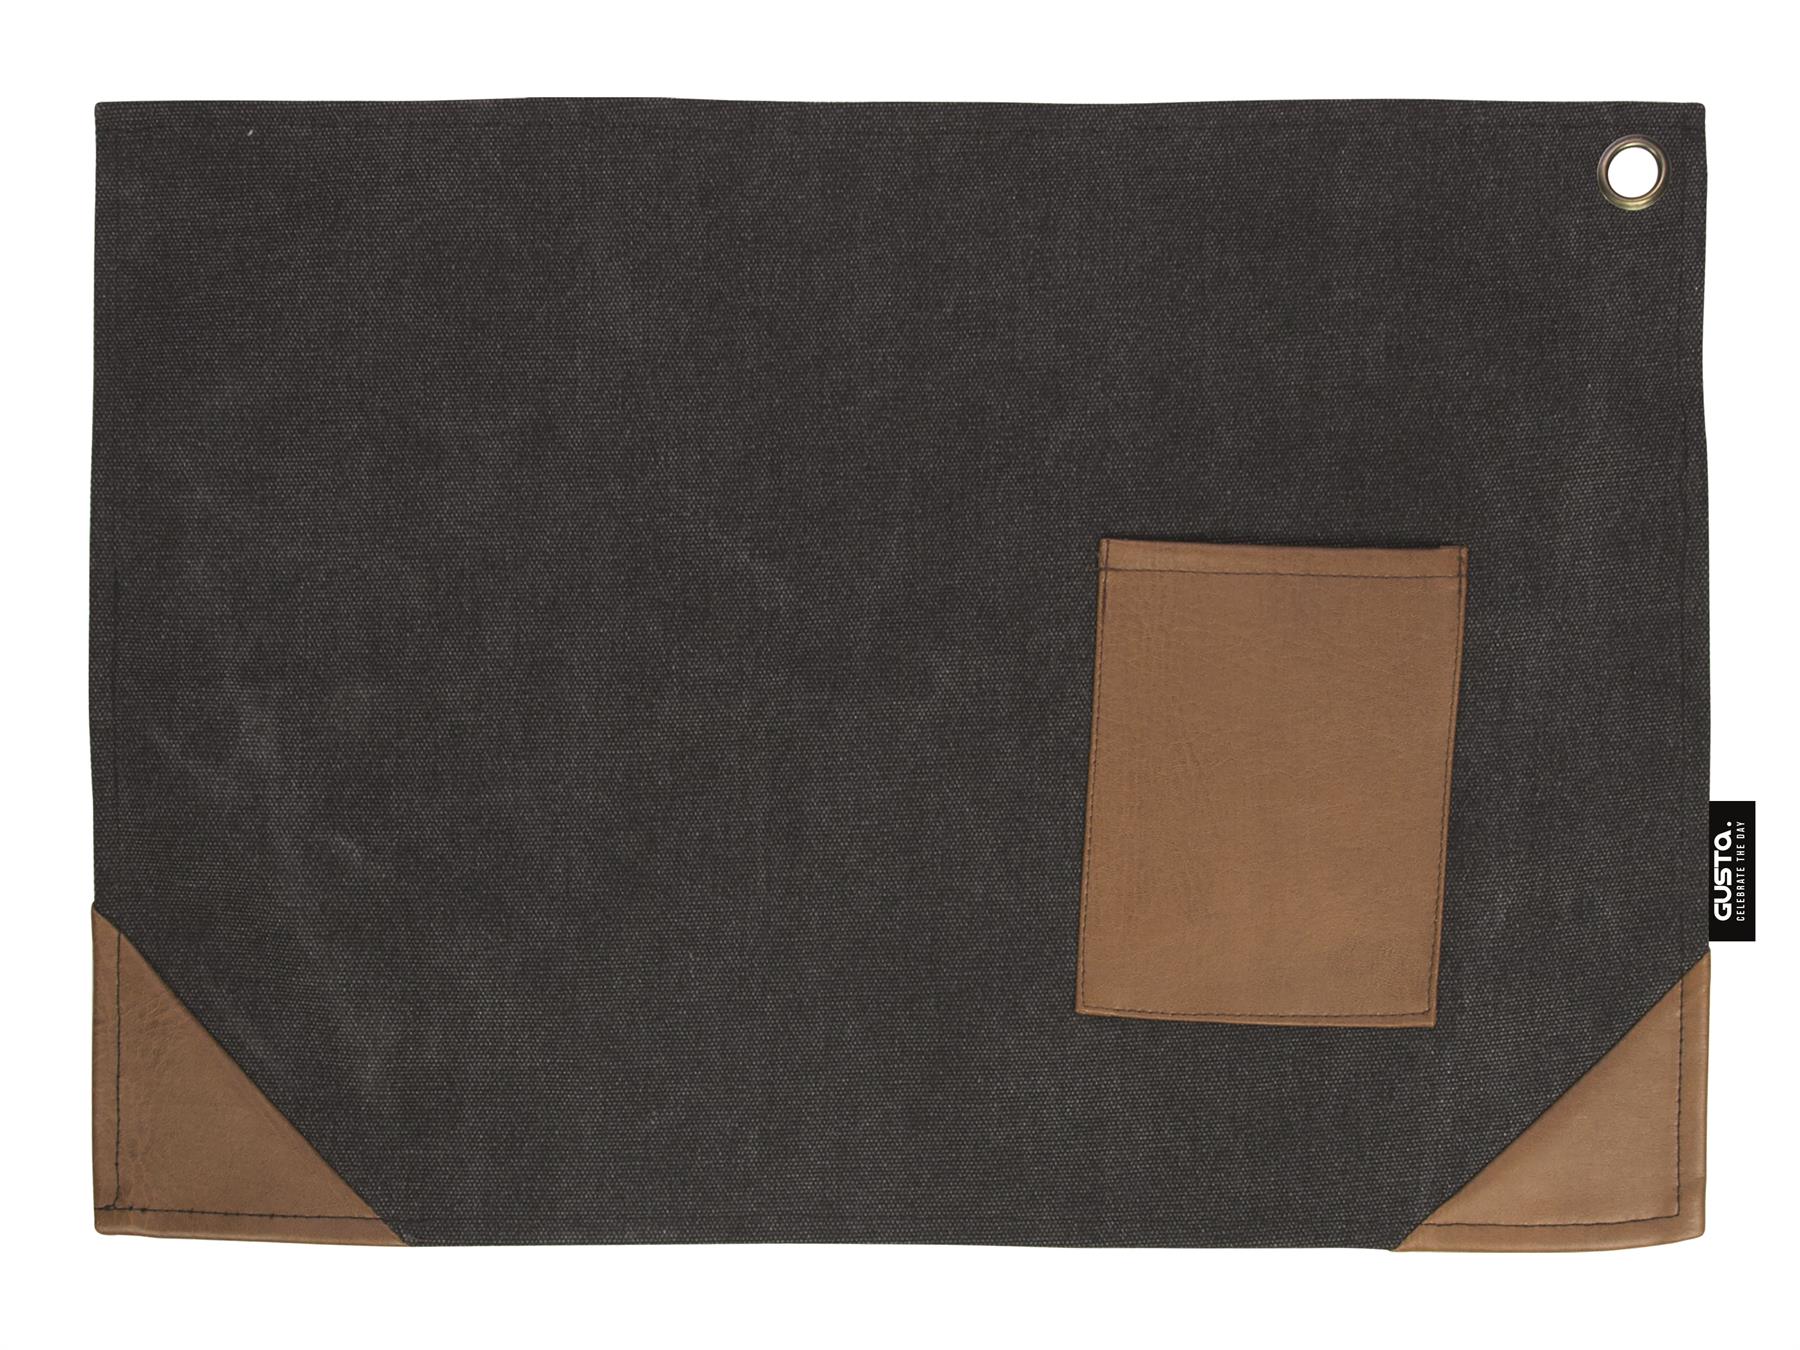 Afbeelding van Set à 2 canvas placemats, zwart 45x32 cm (ucl)